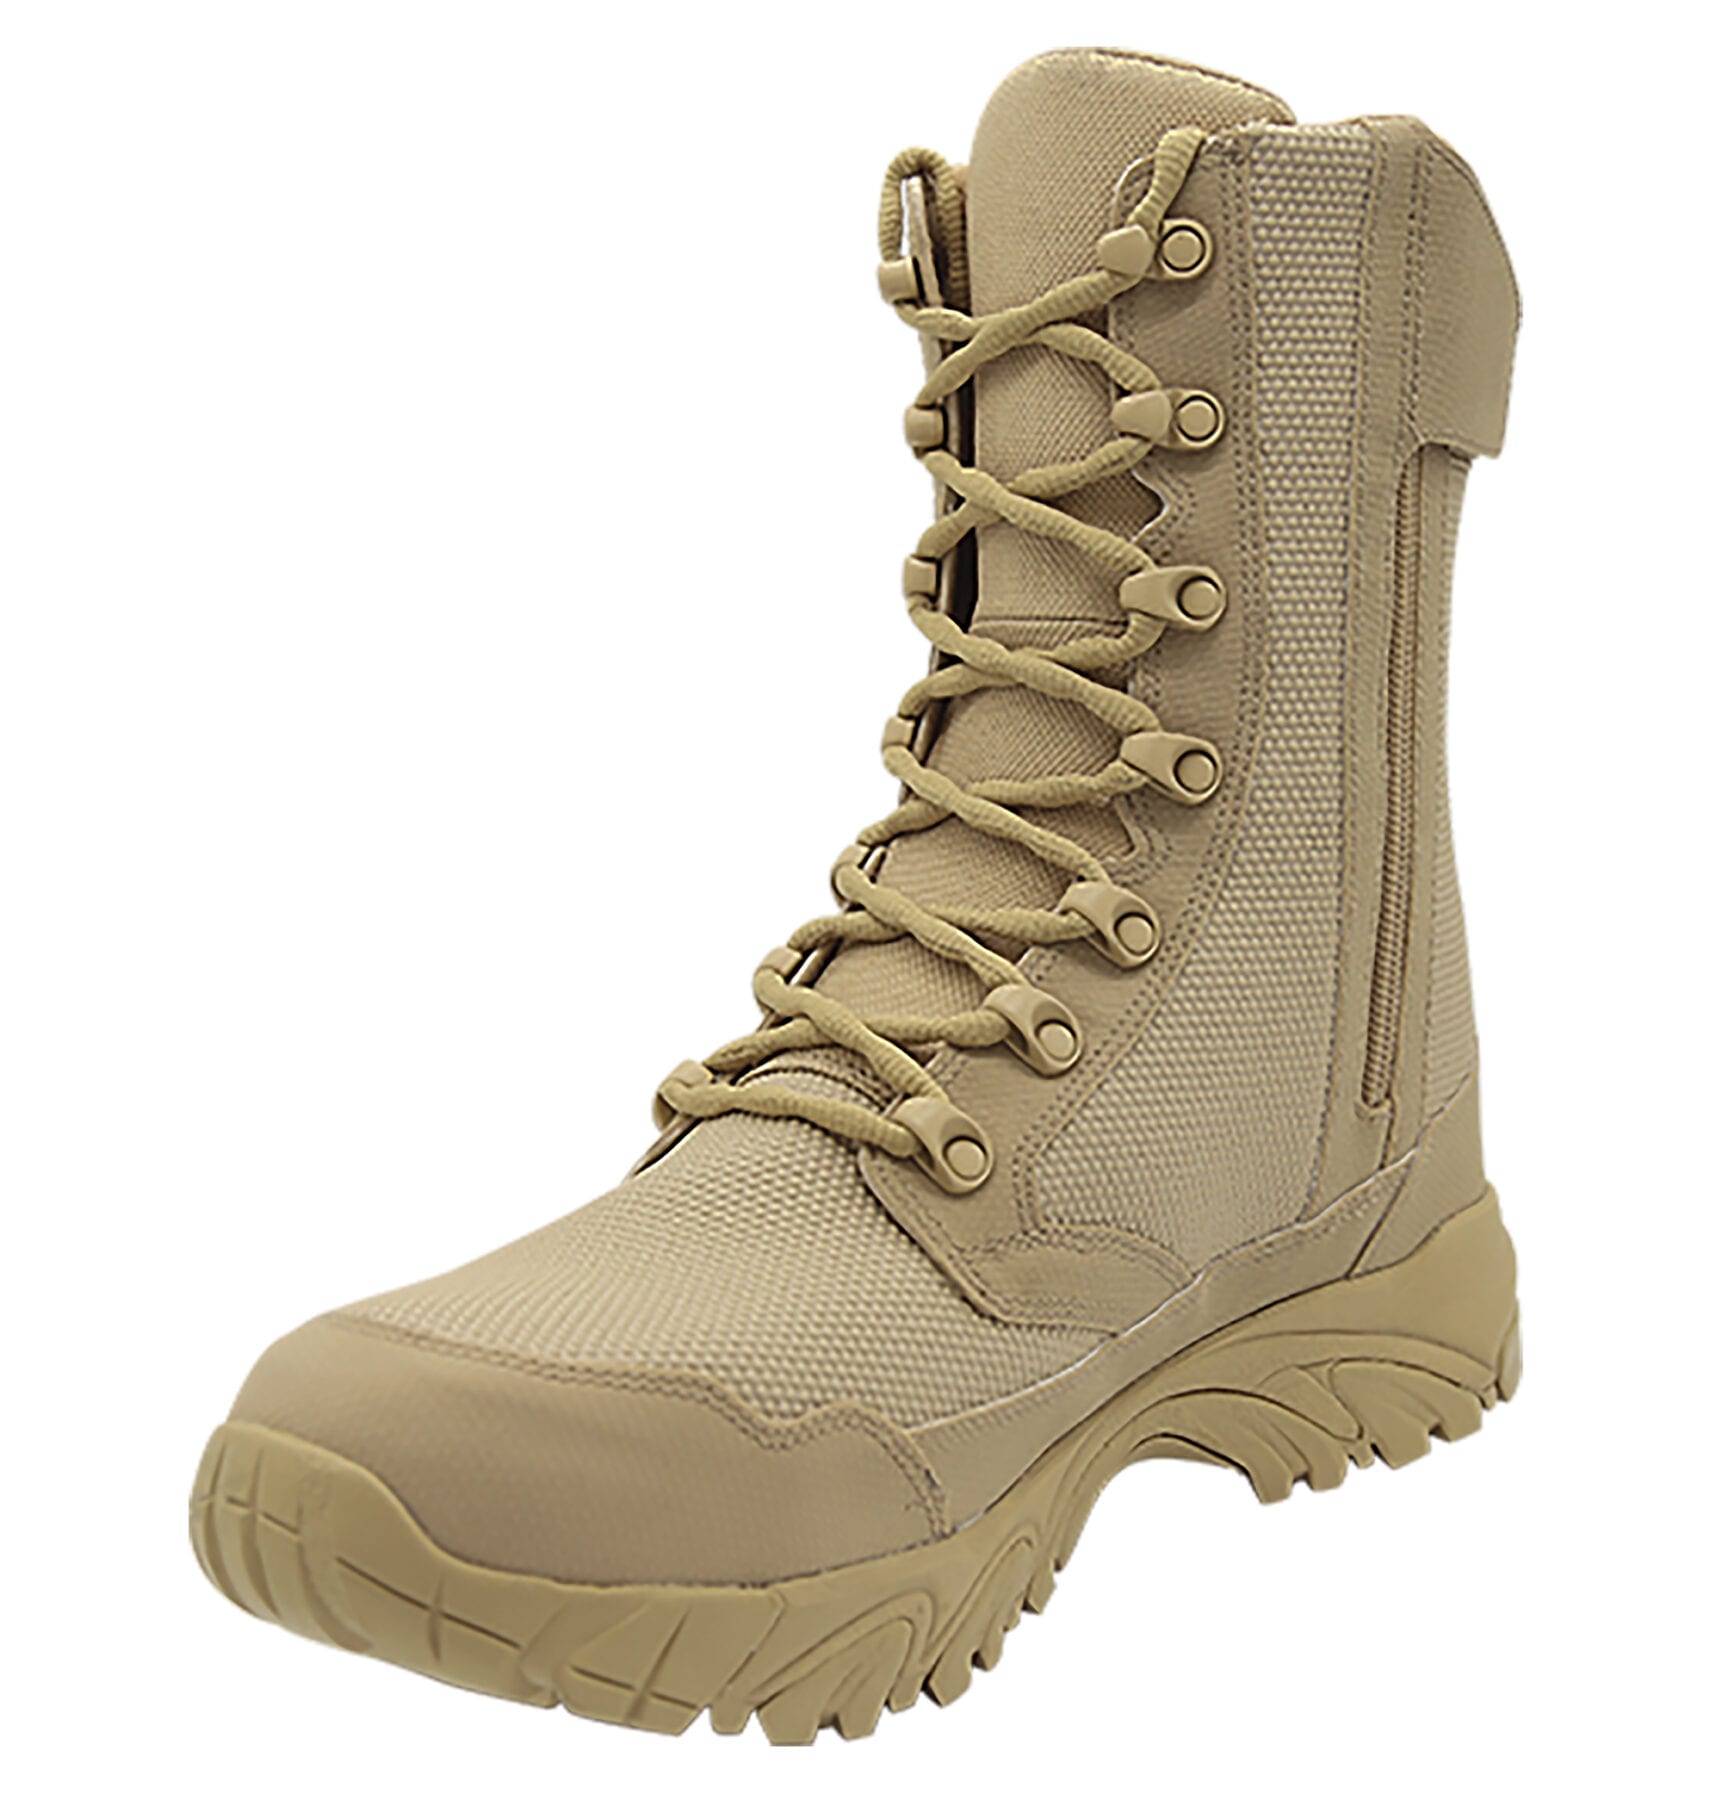 lightweight waterproof combat boots